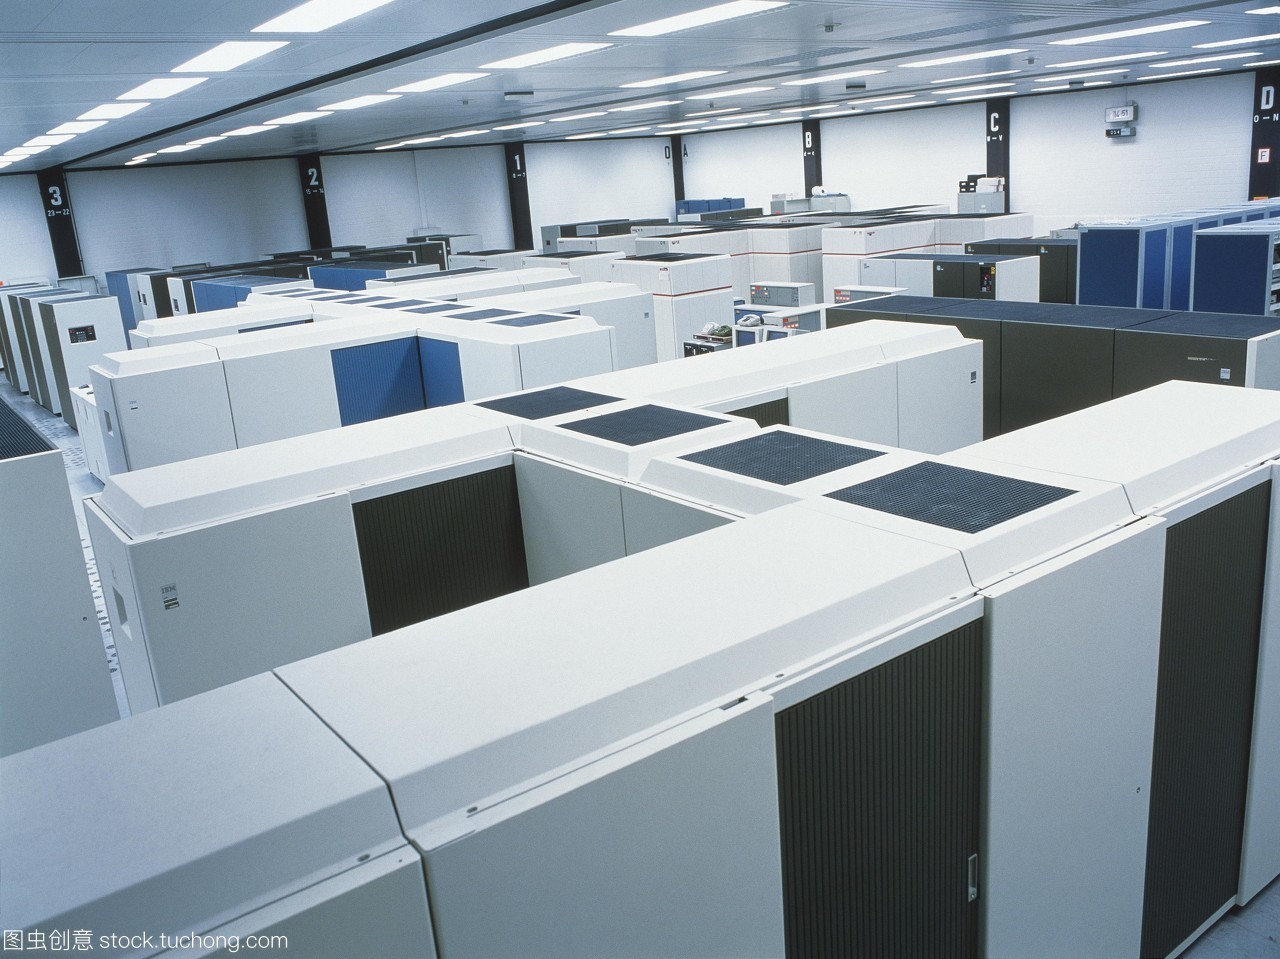 位于大众工厂的大型计算机中心。大型计算机用于处理大量的数据。